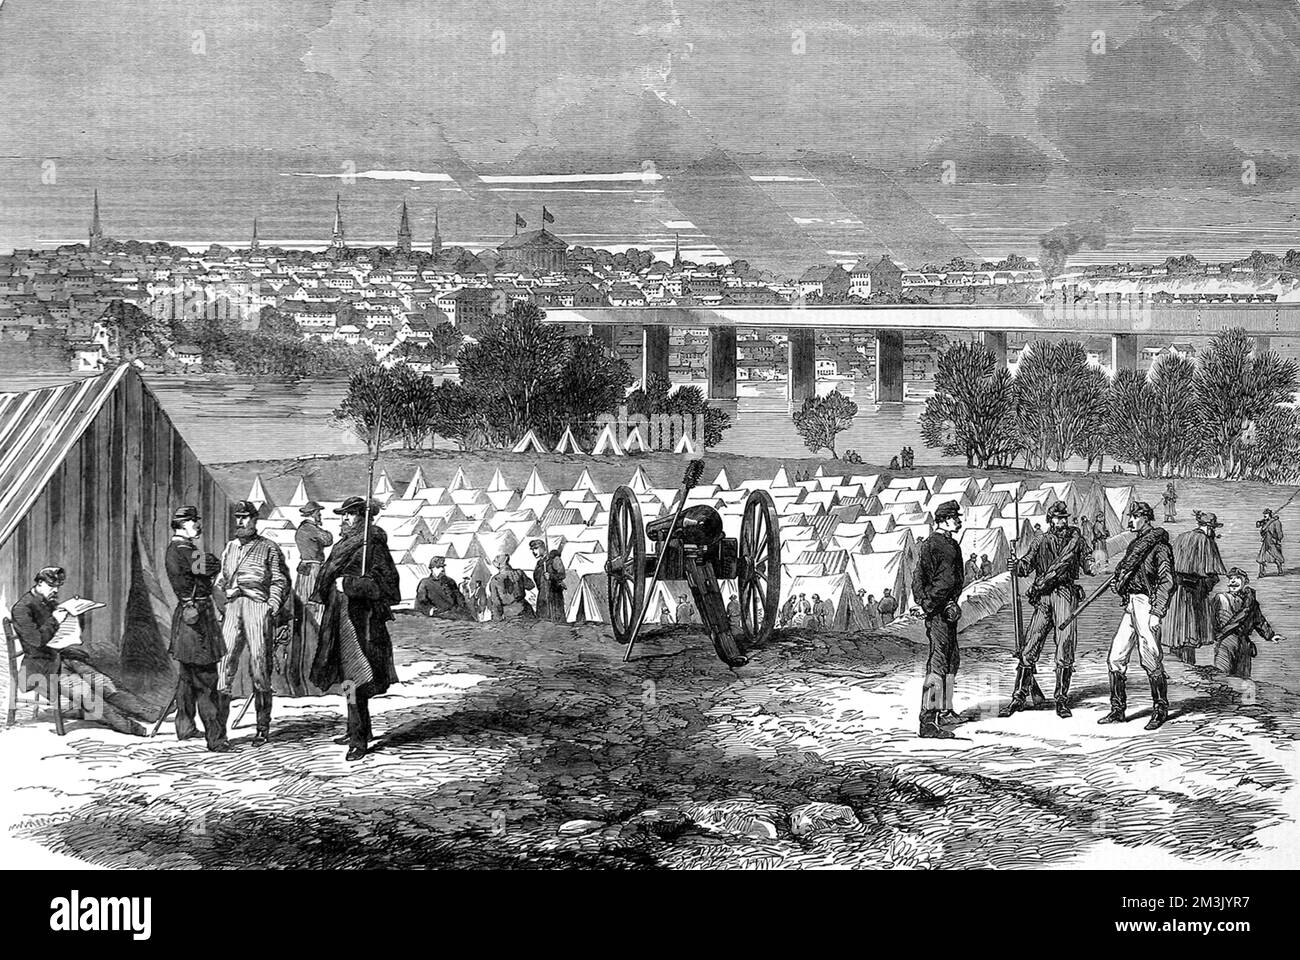 Incisione che mostra il prigioniero del campo di guerra a Belle Isle, Richmond, pieno di prigionieri federali. Sullo sfondo si può vedere la città di Richmond stessa. Data: 1864 Foto Stock